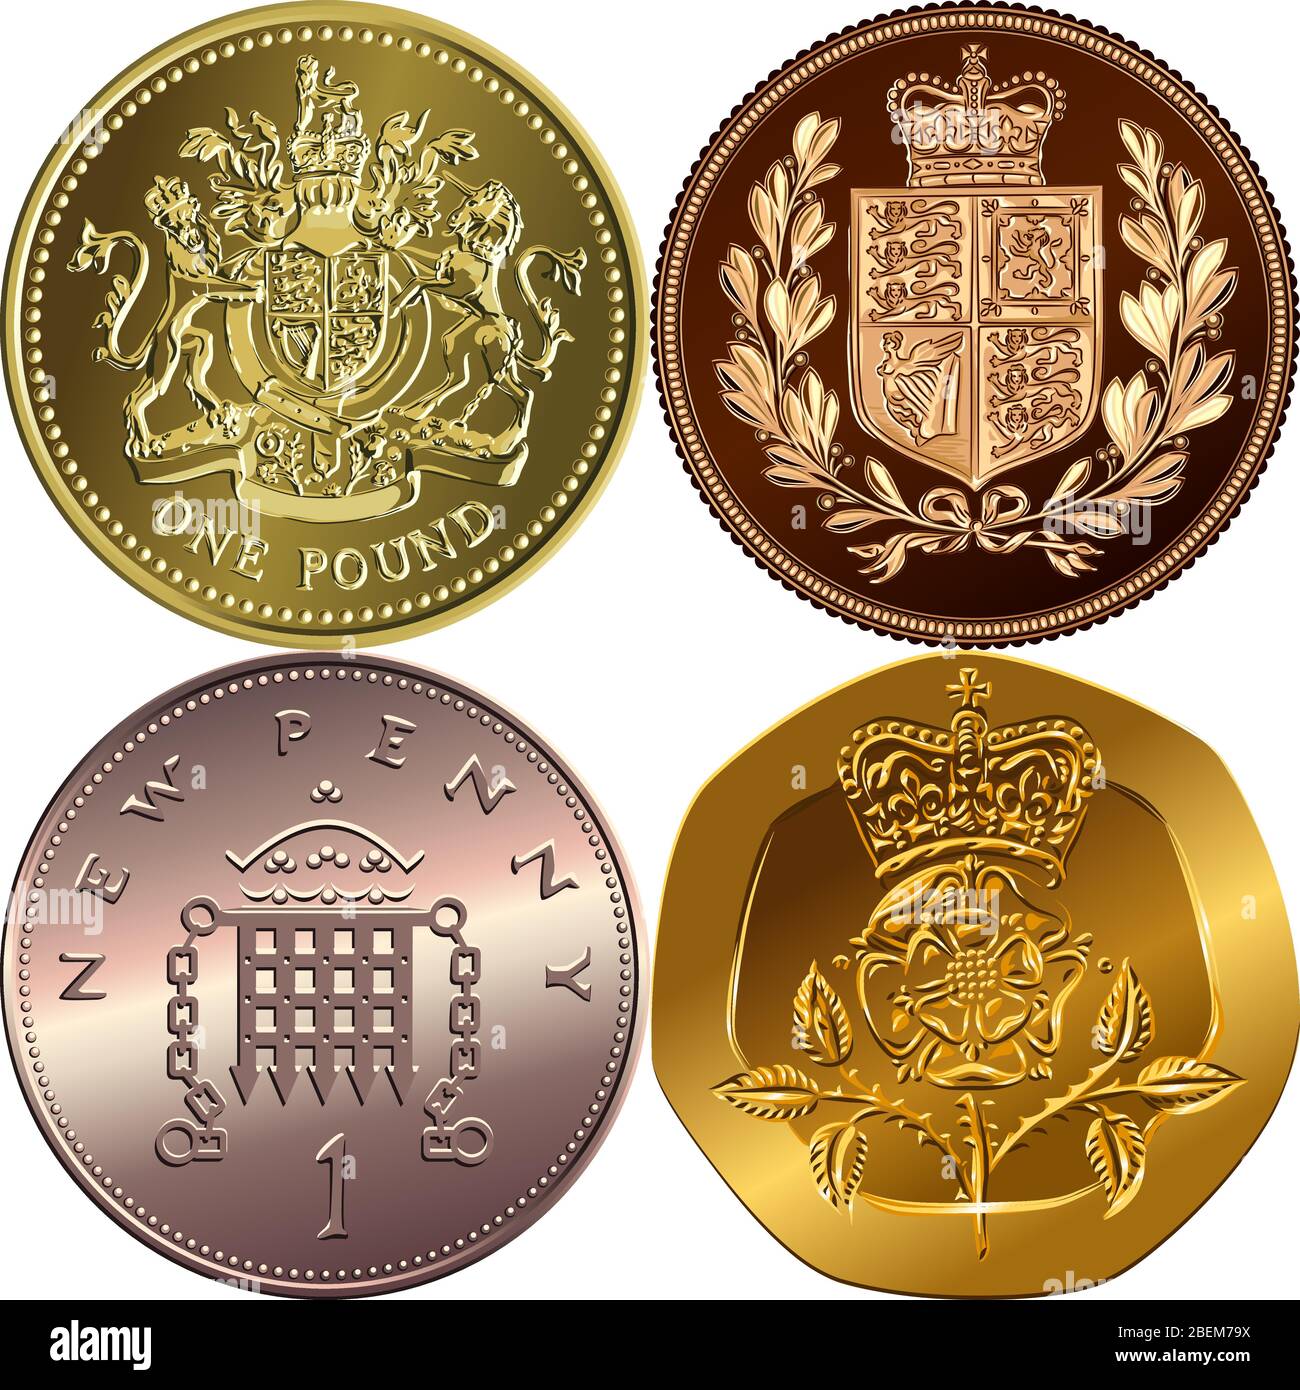 Monnaie britannique: Or une livre sterling, souverain avec des armoiries, bronze nouveau un penny avec portcullis, vingt centimes avec Rosa Tudor couronnée Illustration de Vecteur